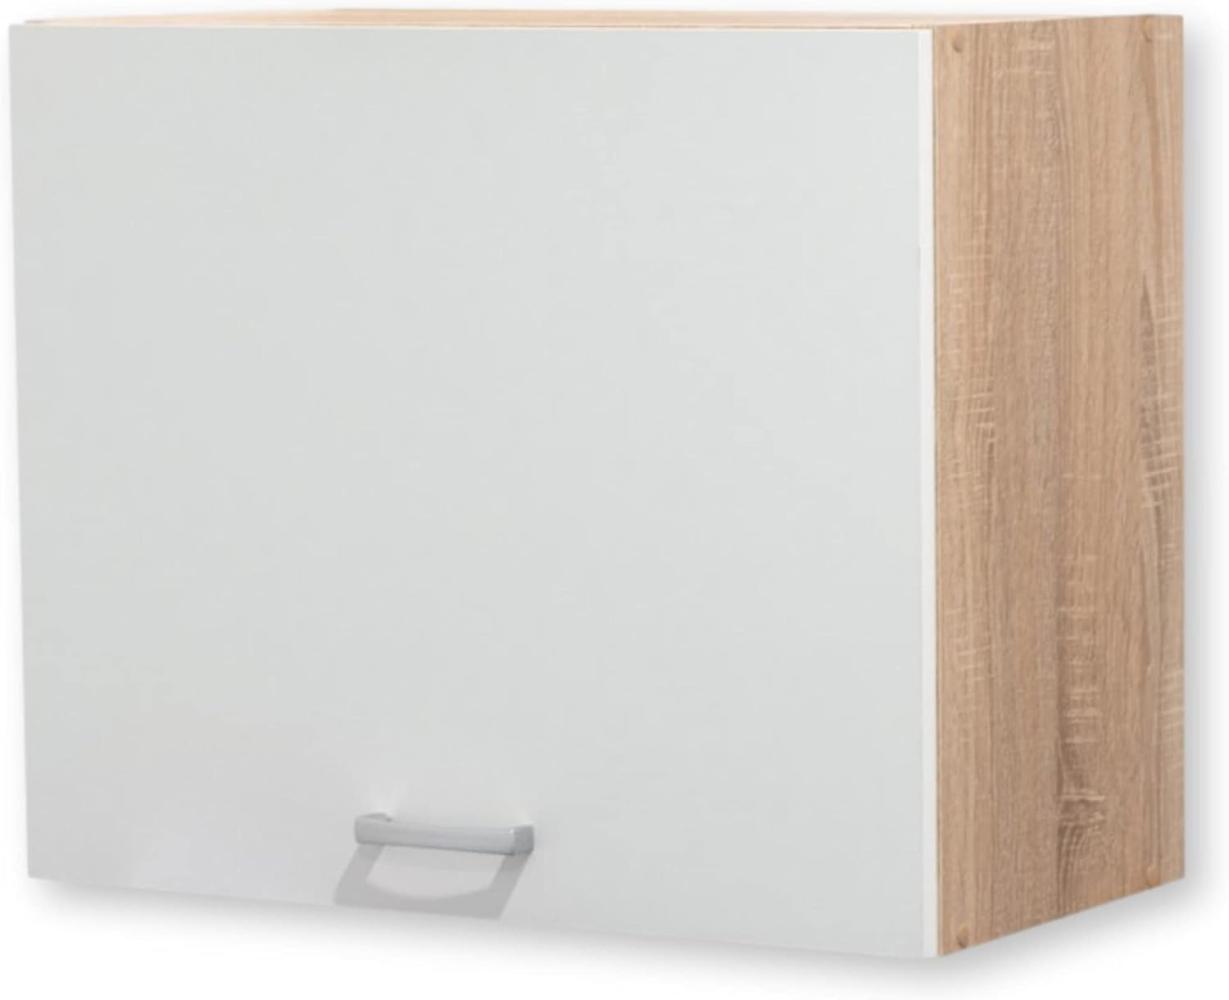 ANDY Moderner Hängeschrank Küche in Eiche Sonoma Optik, Weiß matt - Geräumiger Küchenschrank mit viel Stauraum - 60 x 50 x 31 cm (B/H/T) Bild 1